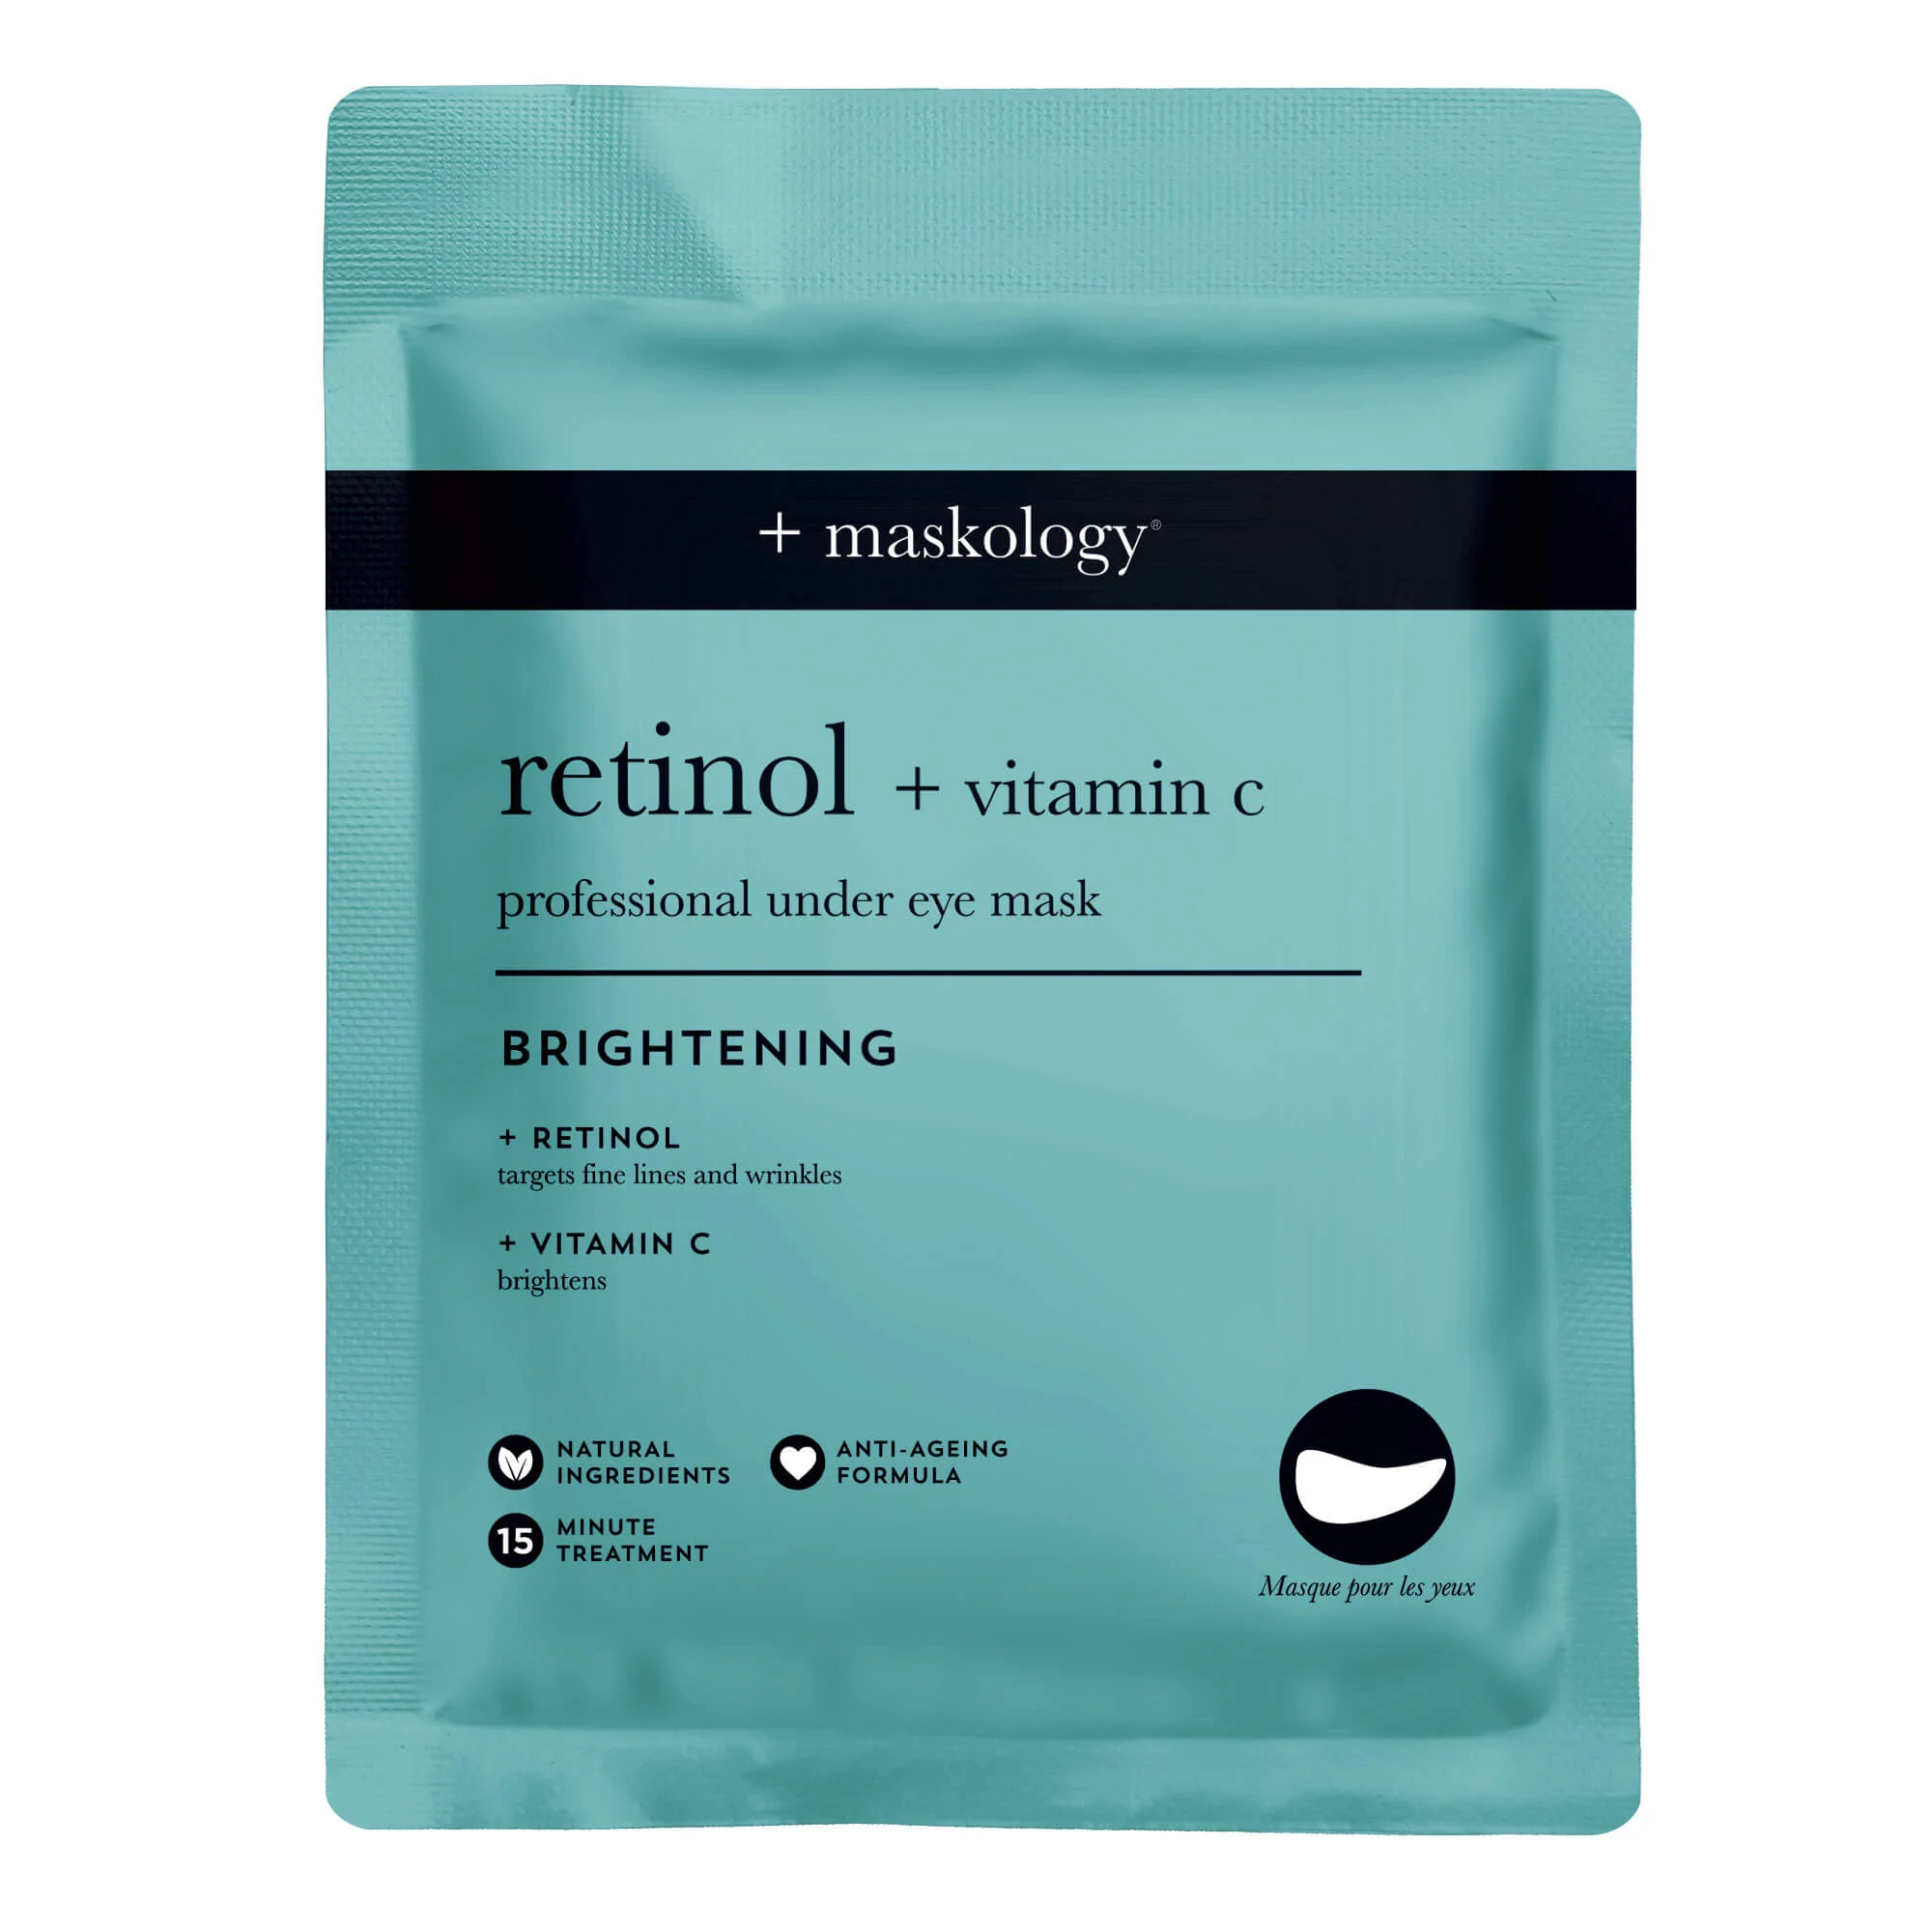 Maskology Retinol + Vitamin C – Professional Under Eye Mask